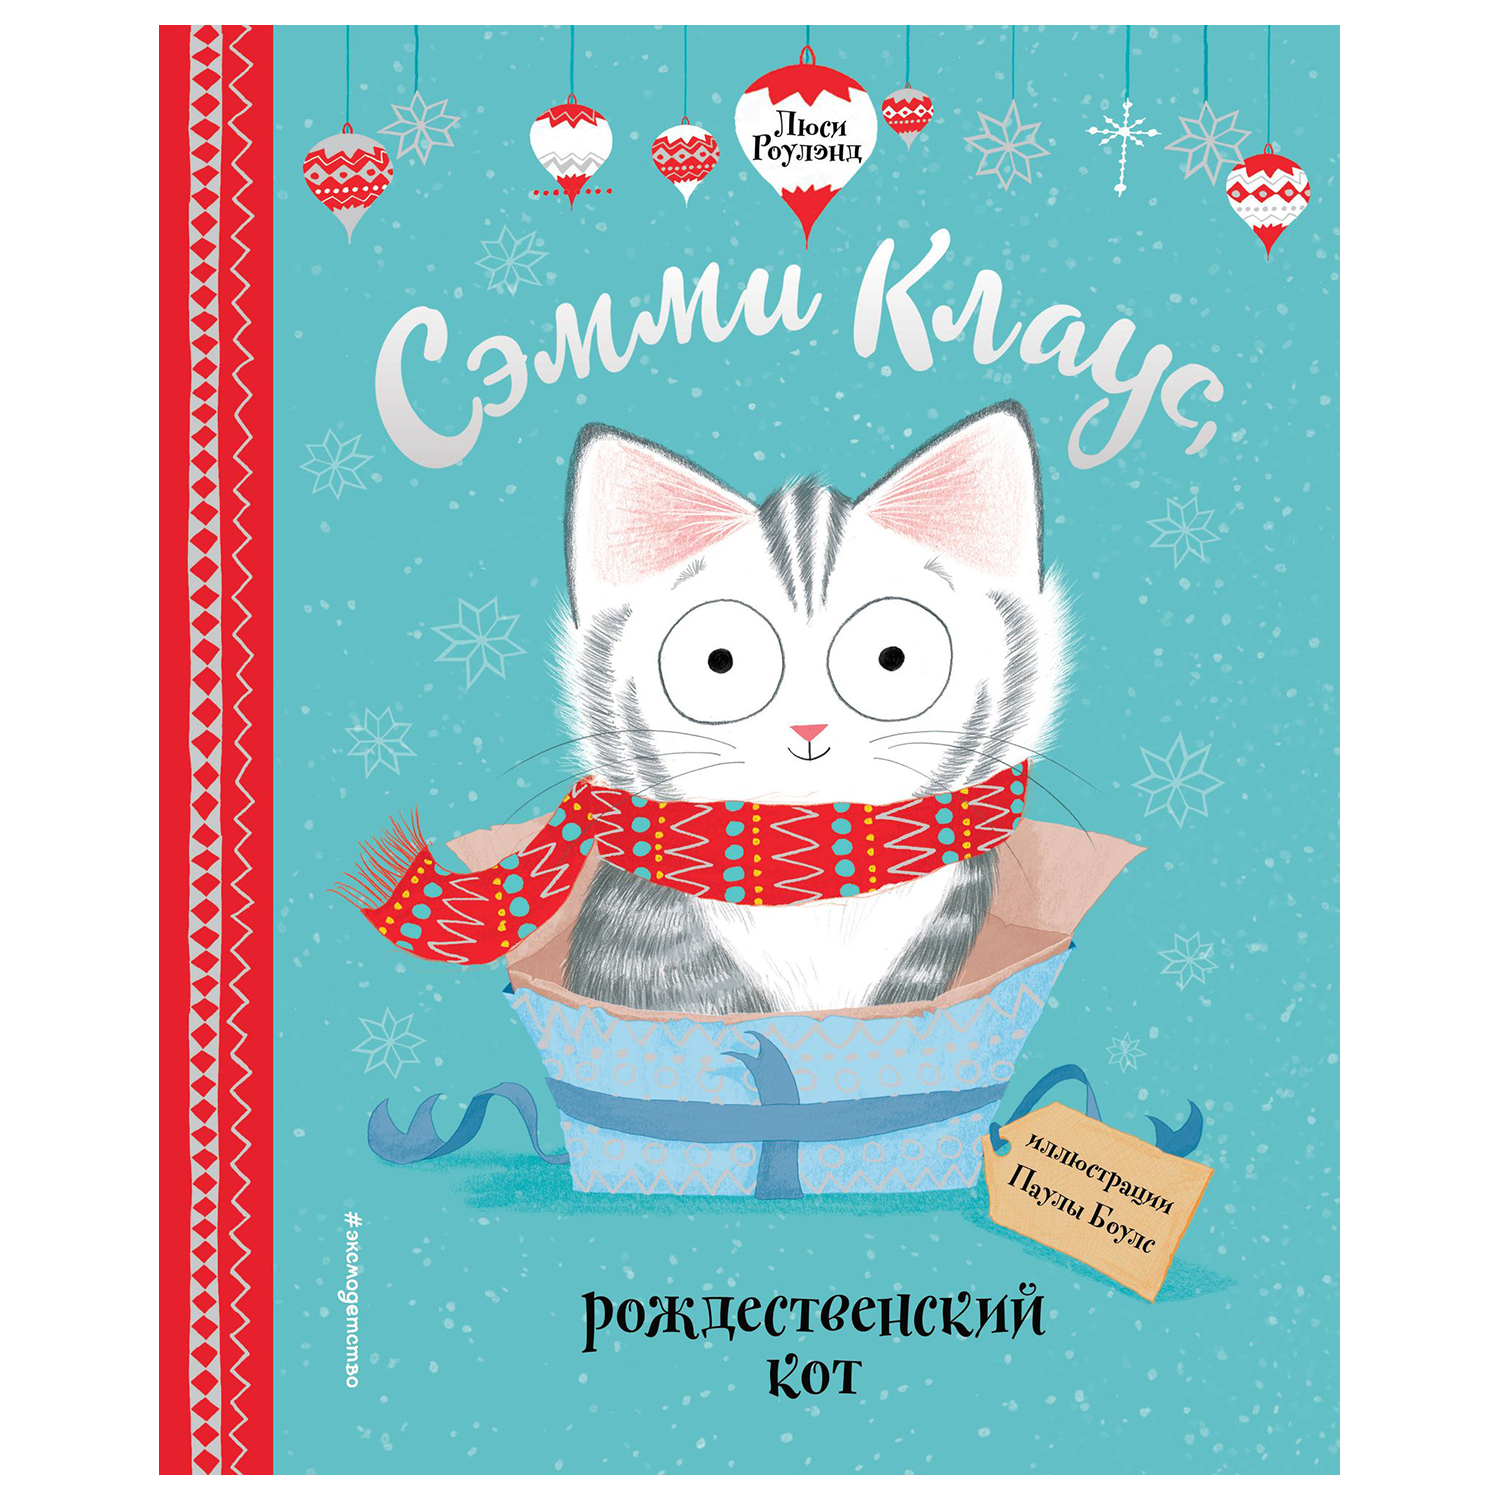 Книга Эксмо Сэмми Клаус рождественский кот иллюстрации Боулз Паулы - фото 1